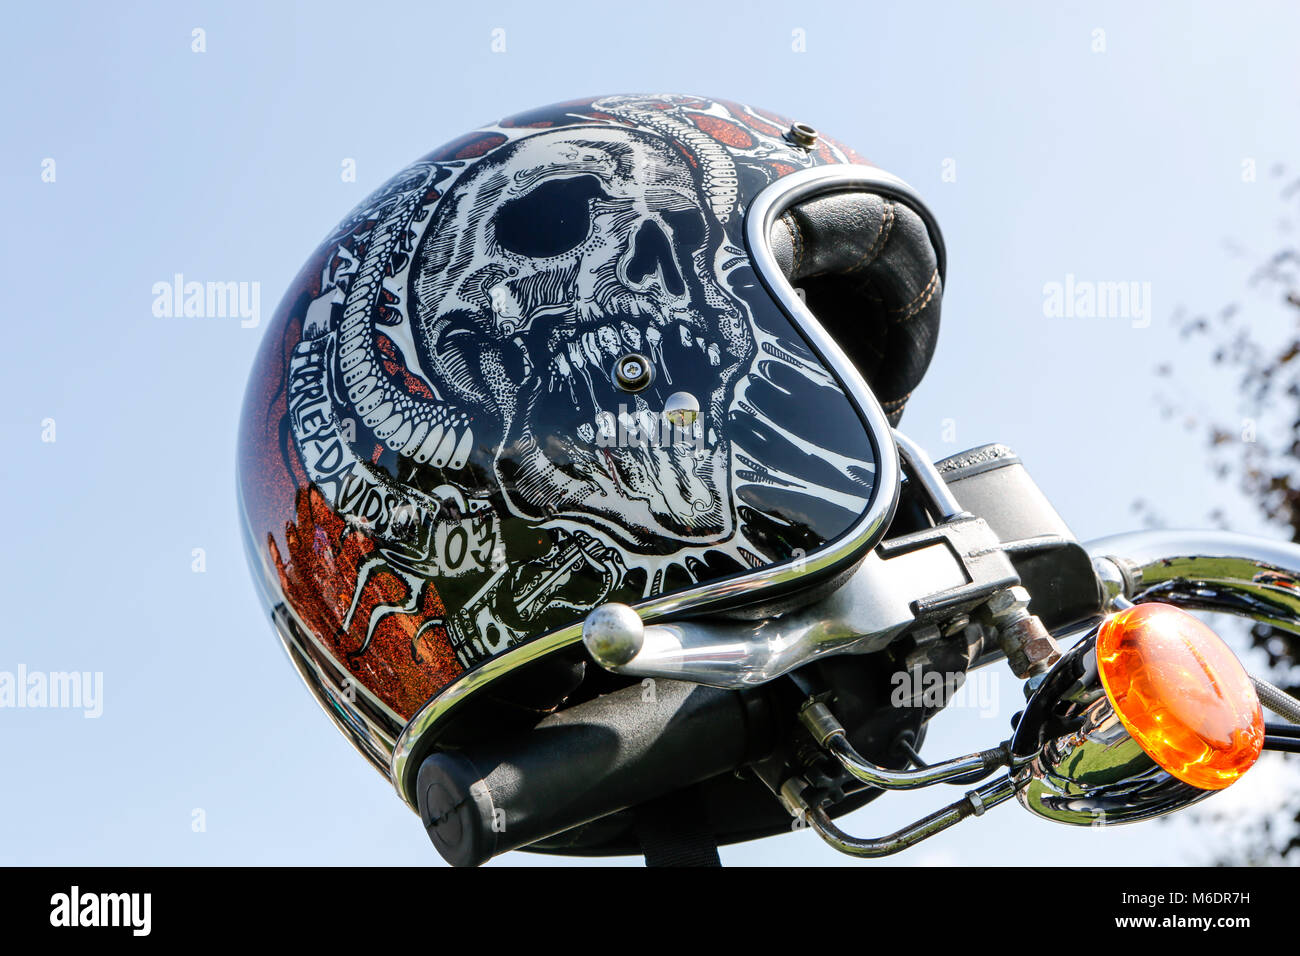 Harley skull immagini e fotografie stock ad alta risoluzione - Alamy